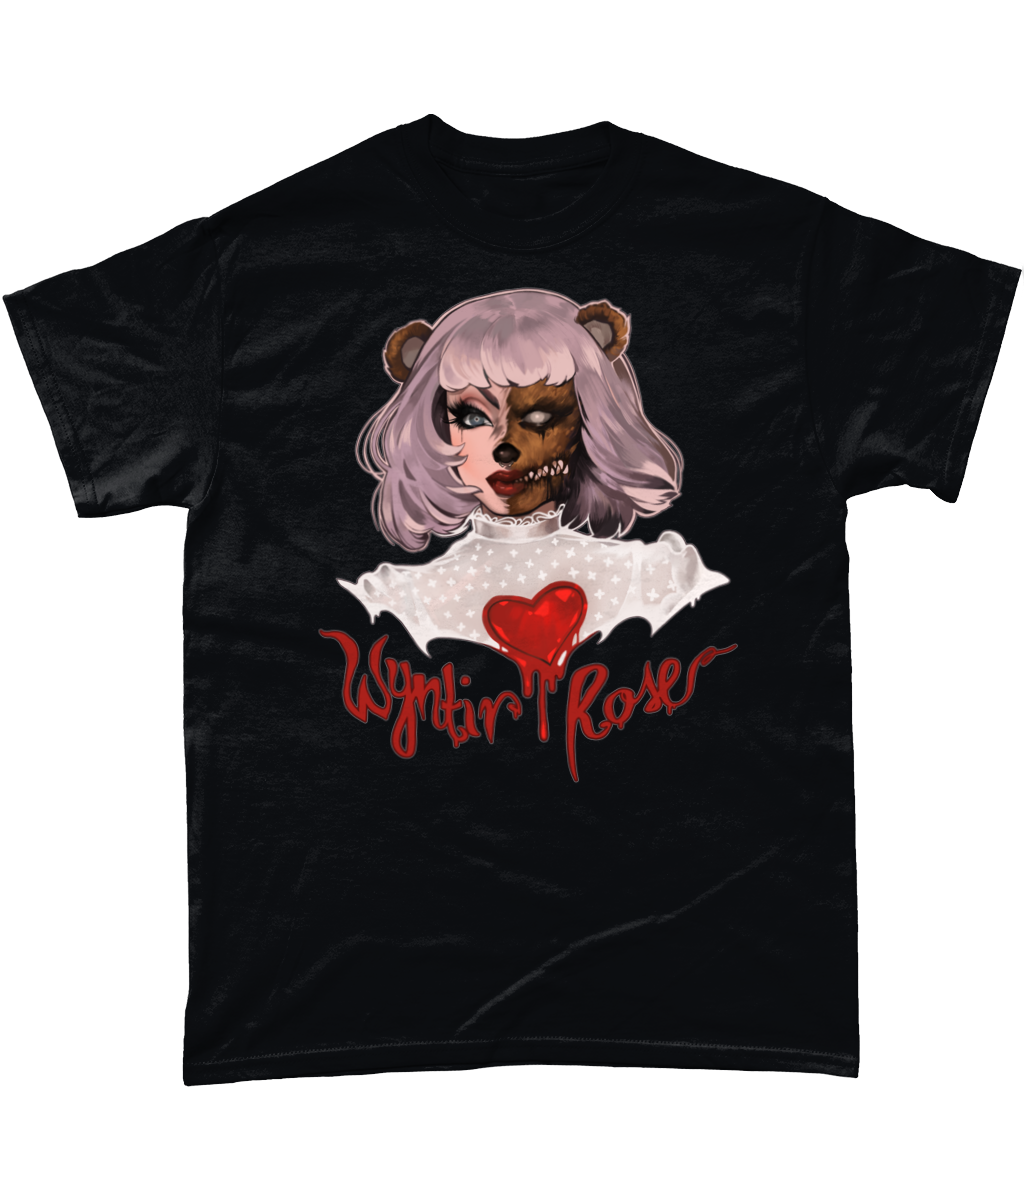 Wyntir Rose - Teddy Bear T-Shirt